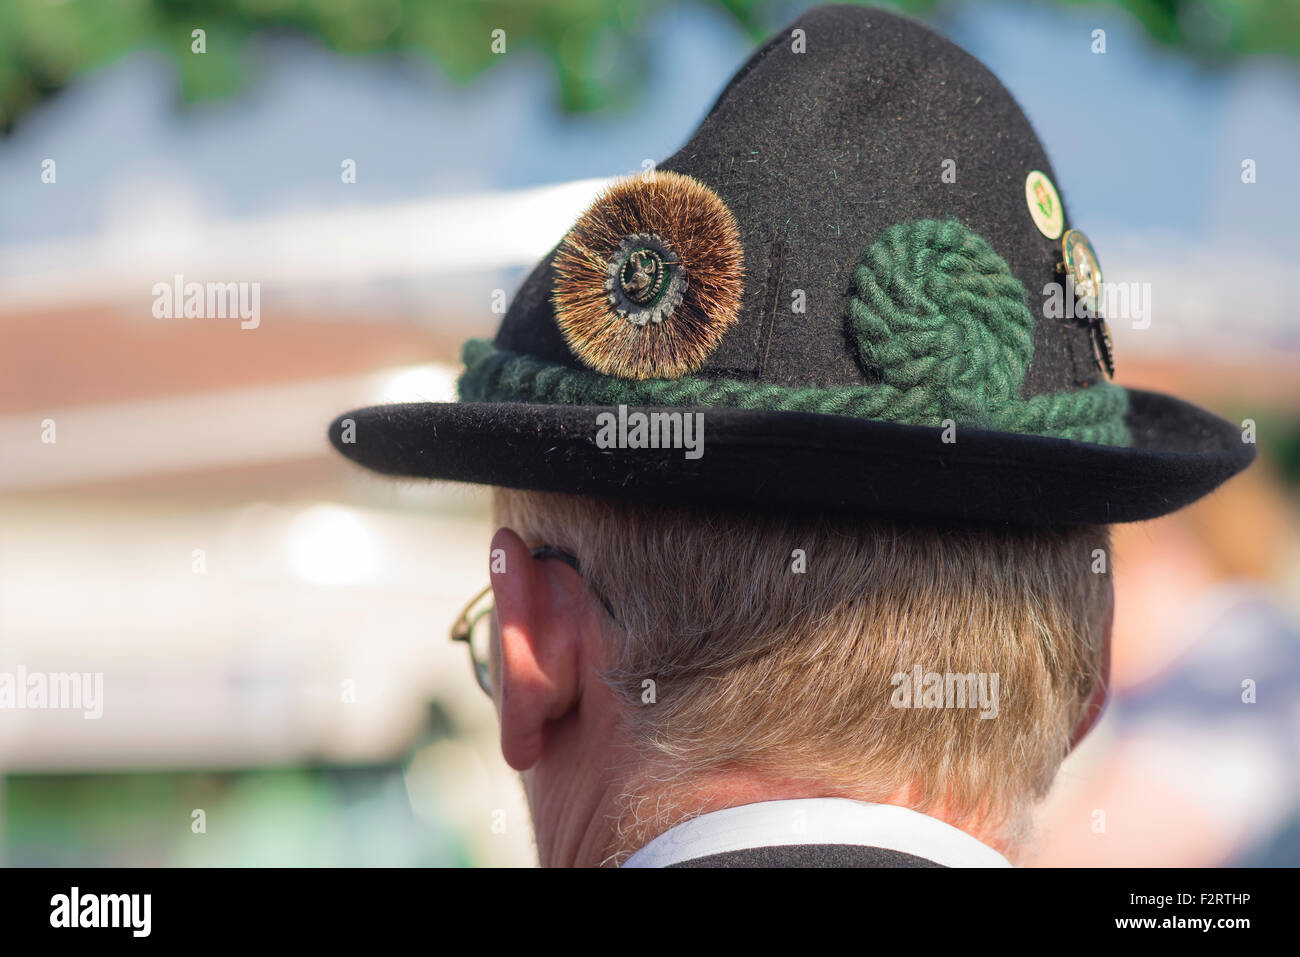 Tyrolean hat Austria, view of a man wearing a traditional Tyrolean green felt hat known as an alpen-schatz, Vienna, Wien, Austria. Stock Photo